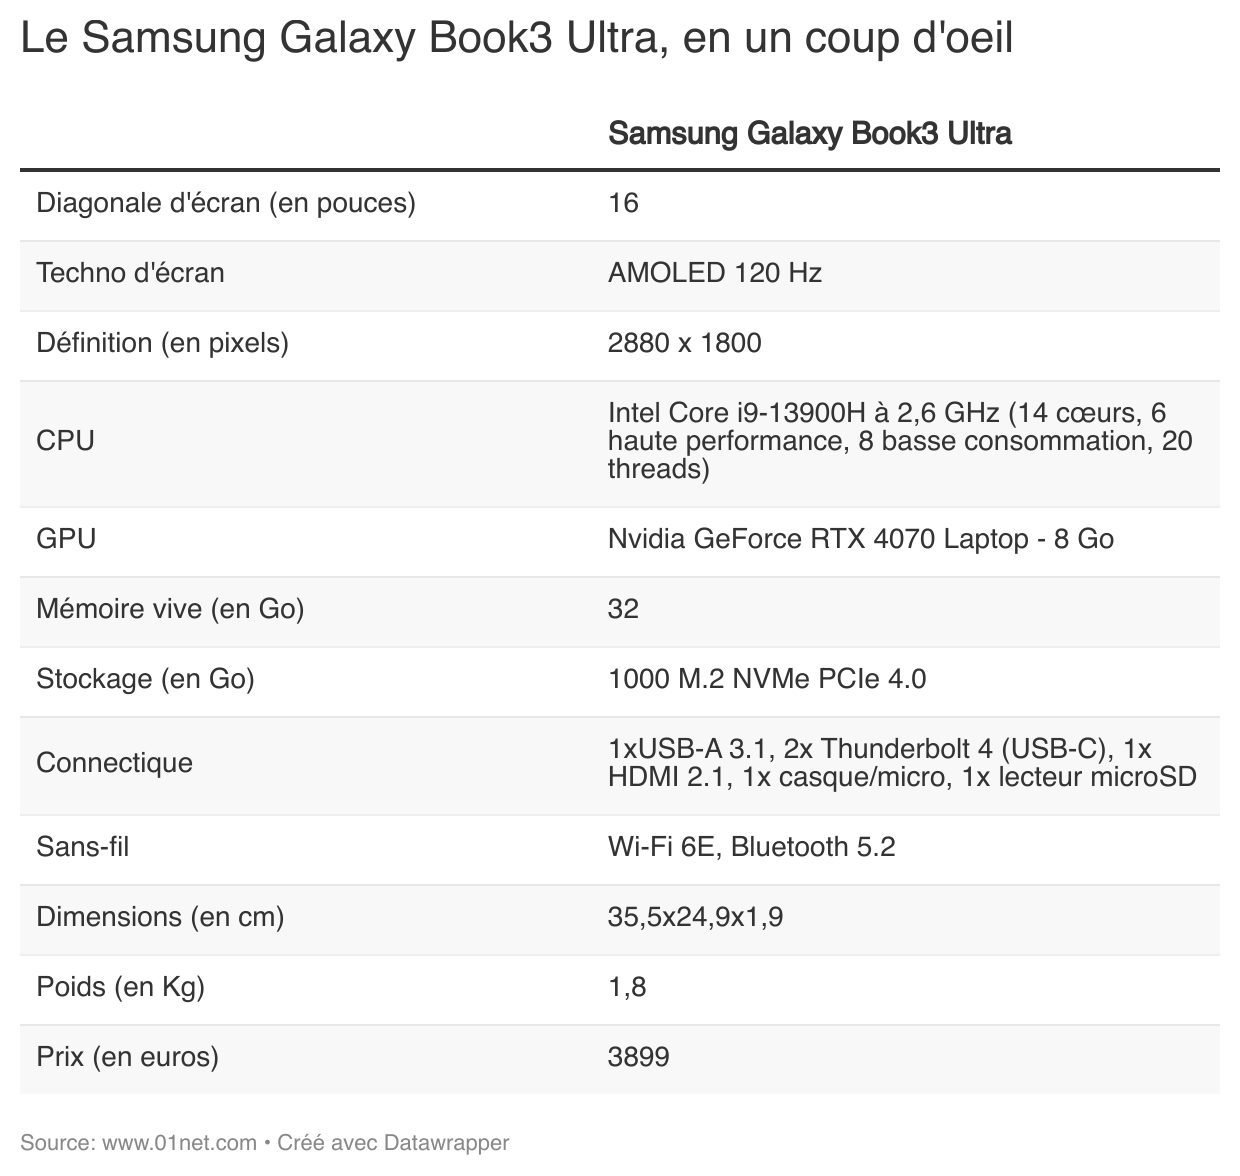 Le Galaxy Book3 Ultra, de Samsung, en un coup d'oeil